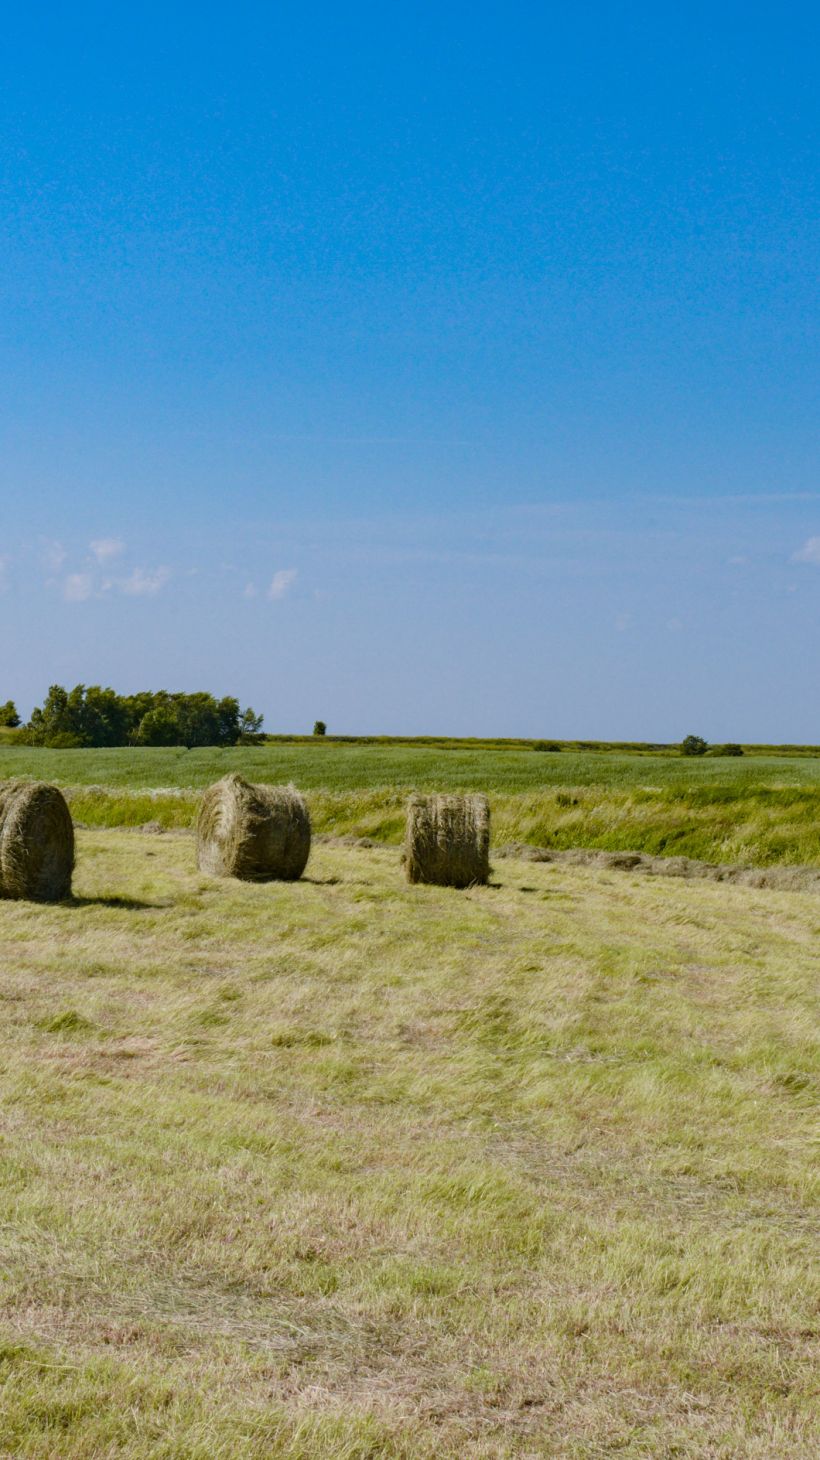 Hay bales on farmland along the Chignecto Isthmus in Nova Scotia, Canada.